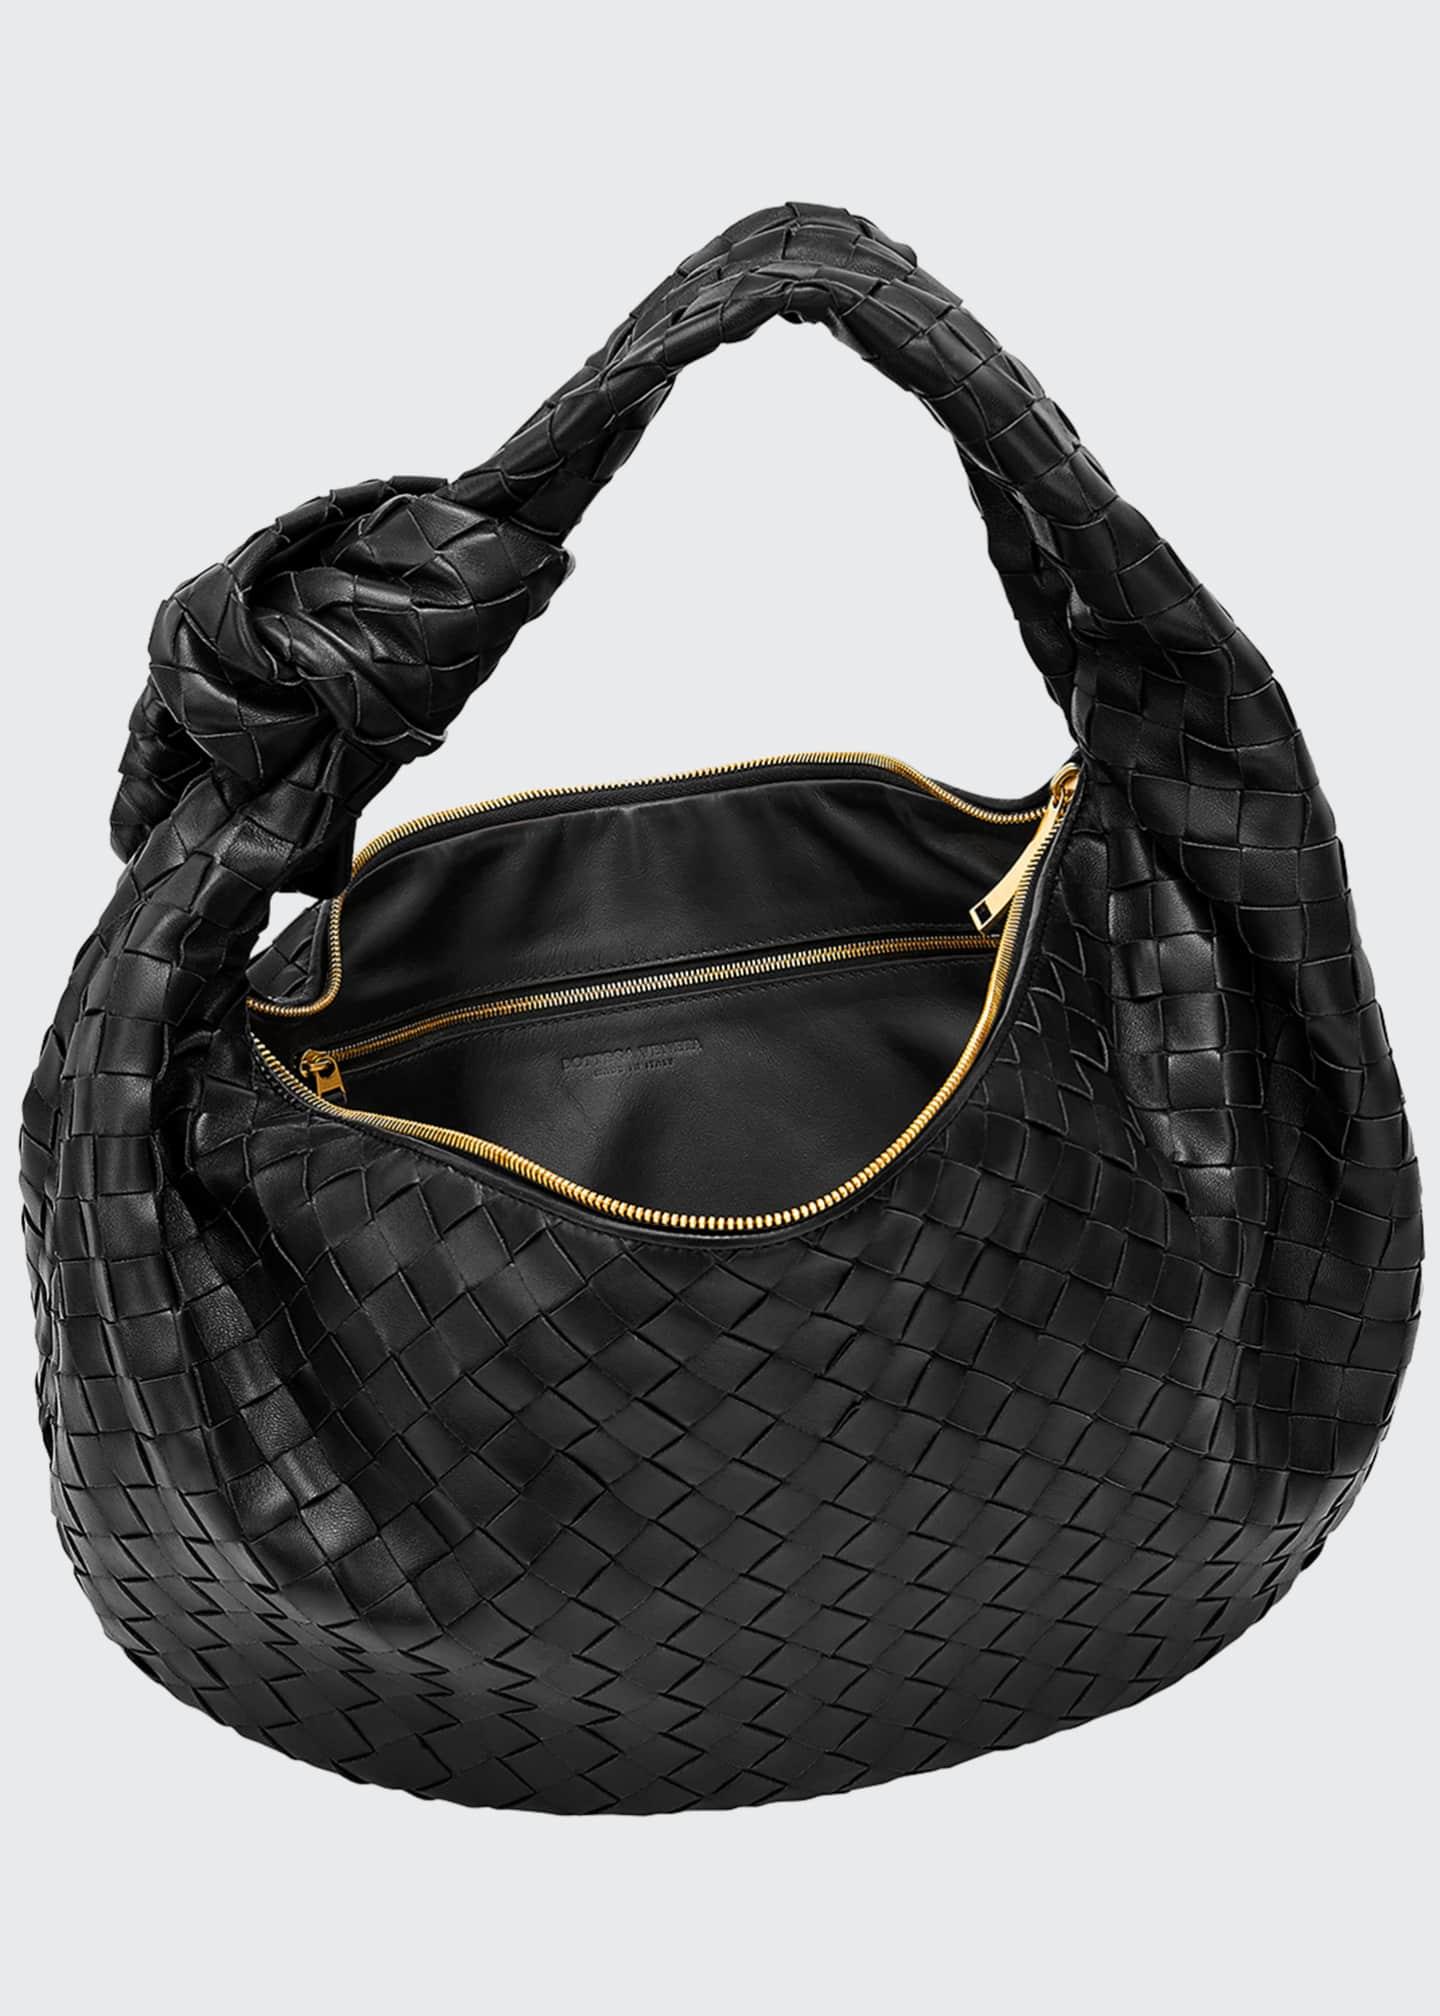 Bottega Veneta Leather Jodie Napa Intrecciato Small Hobo Bag in Brown - Lyst